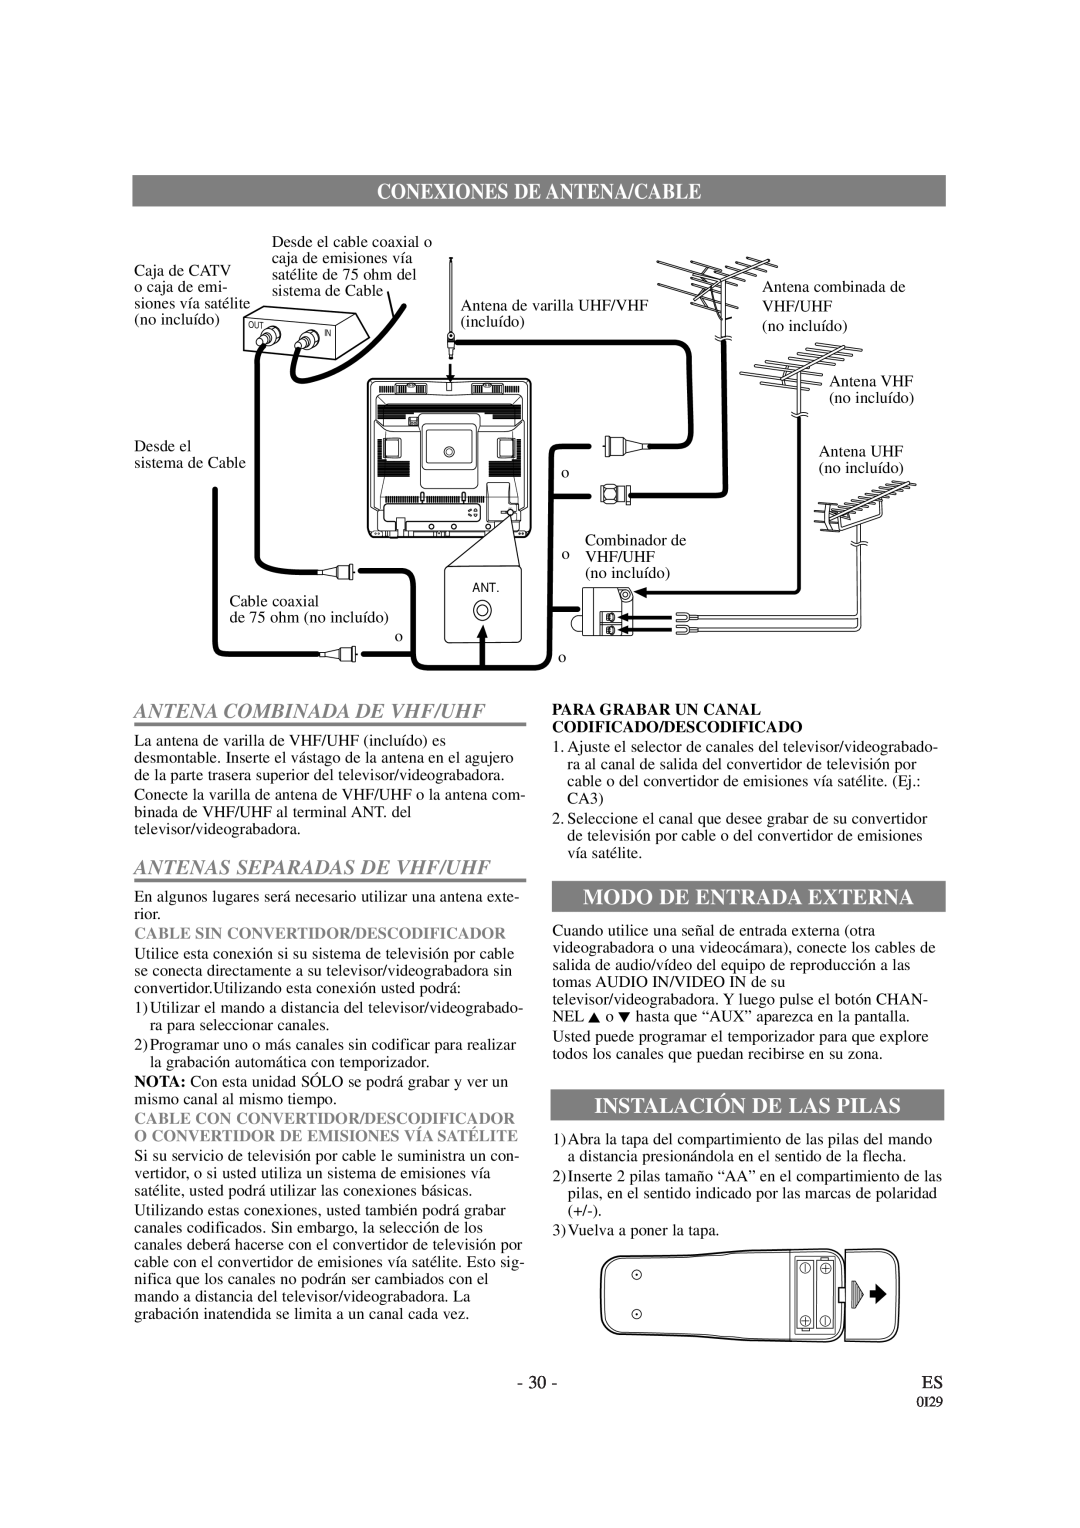 Symphonic WF-13C2 owner manual Conexiones De Antena/Cable, Modo De Entrada Externa, Instalación De Las Pilas 